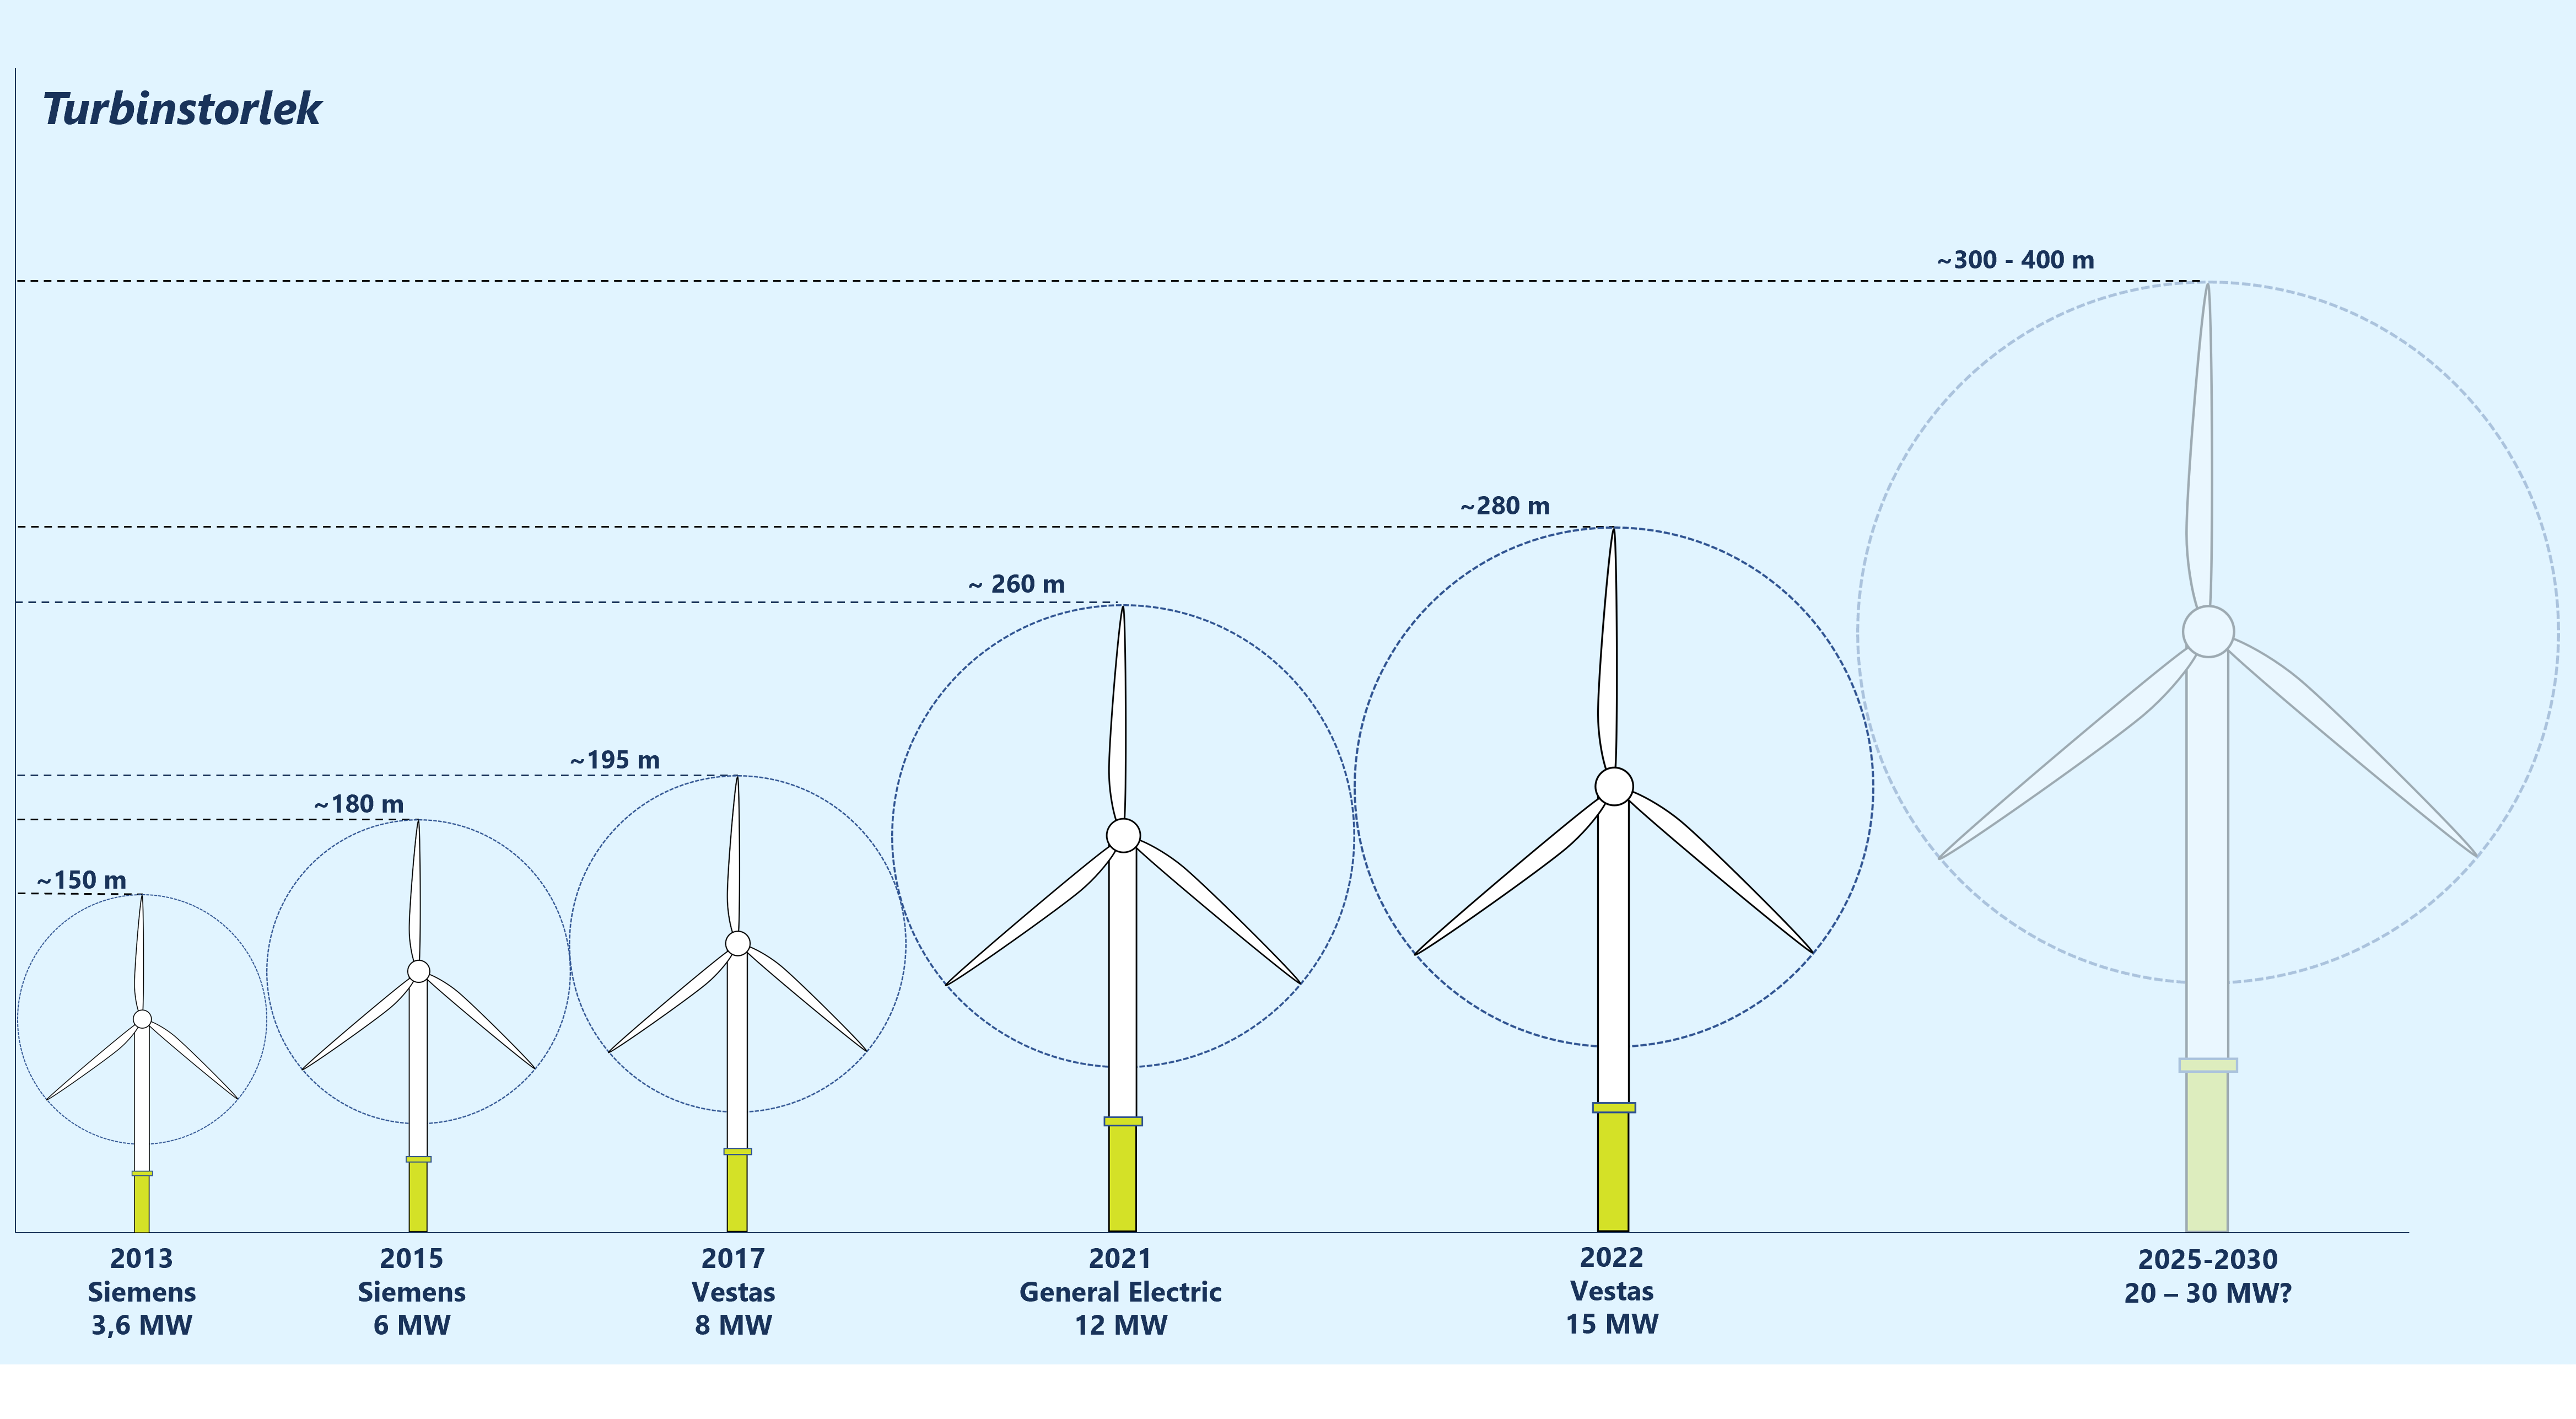 Figur som illustrerar turbinernas utveckling